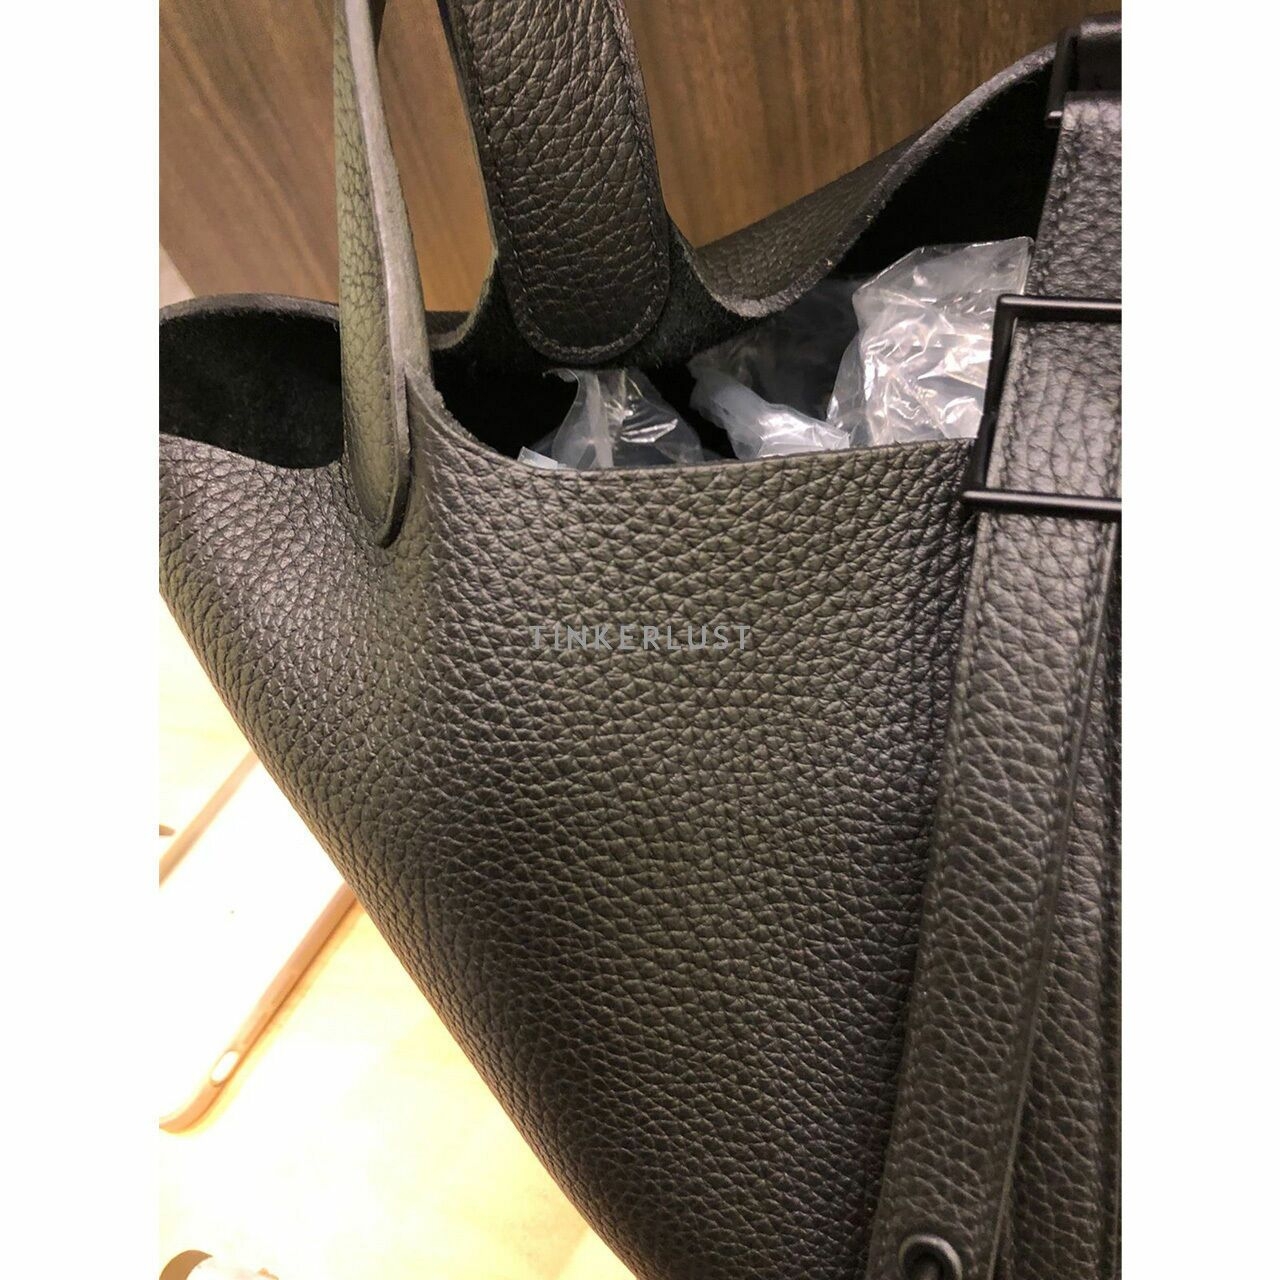 Hermes Picotin 22 Noir Taurillon Clemence #Z Handbag